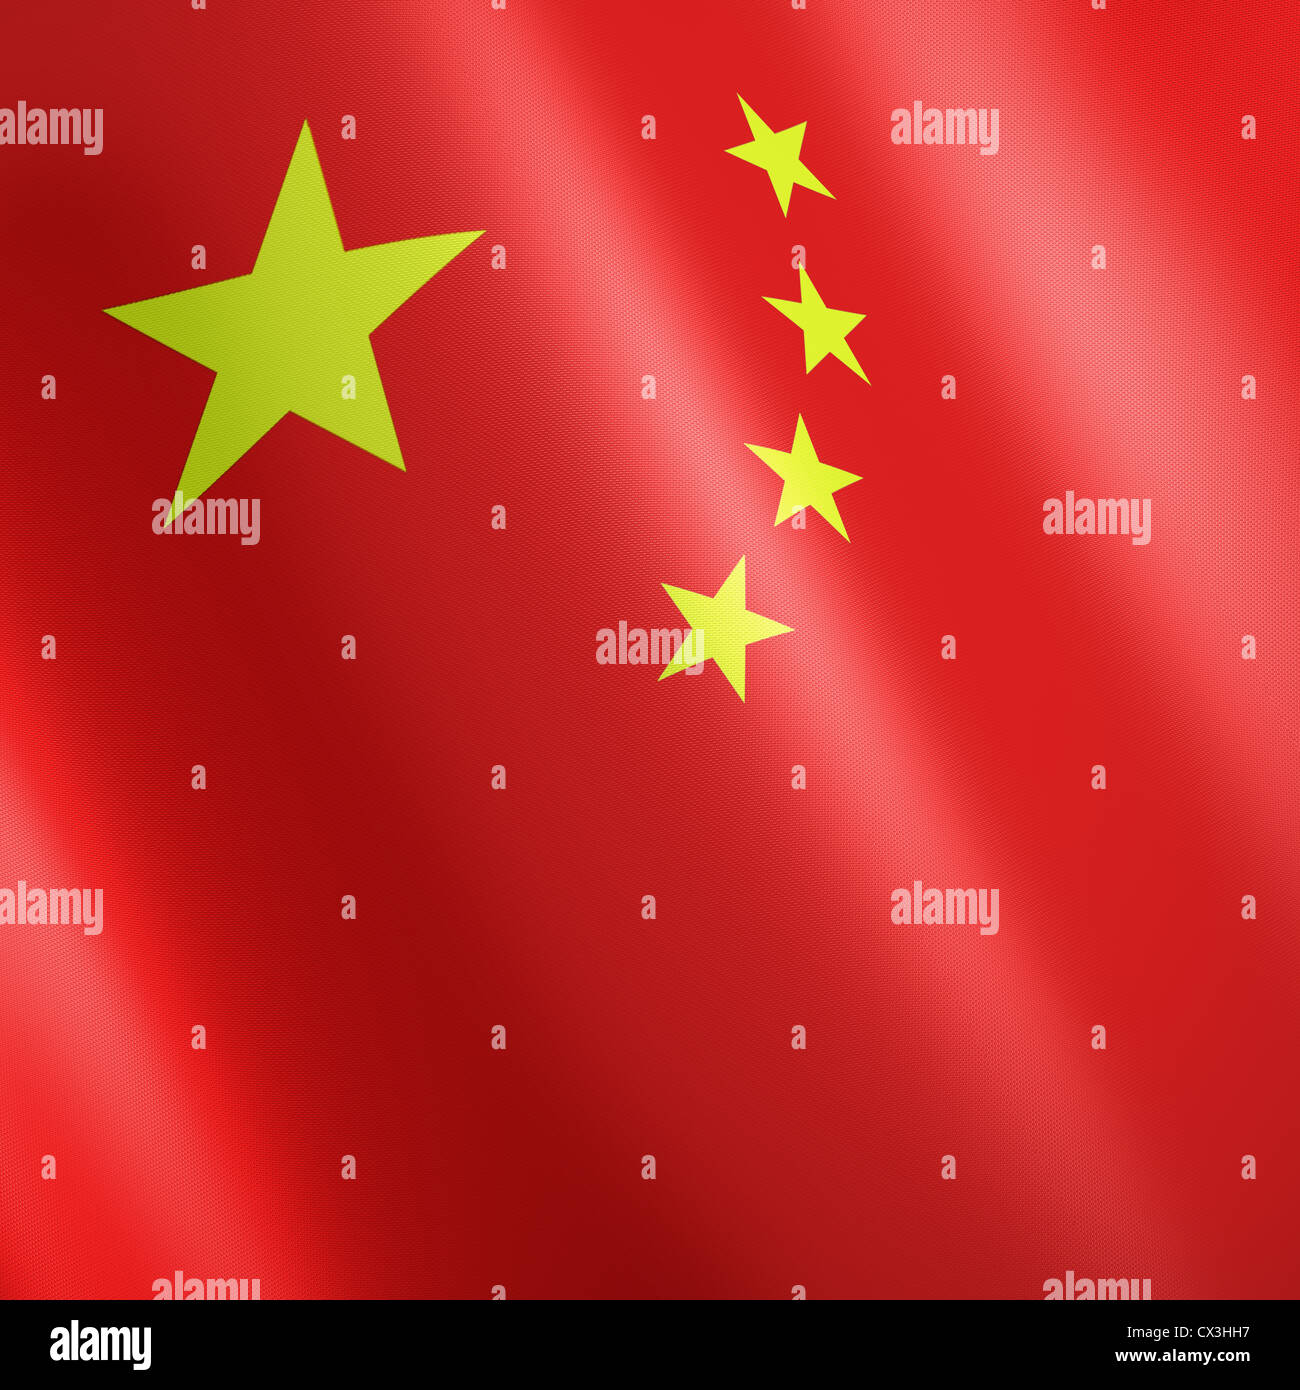 Chinesische Fahne mit gelben Sternen auf rotem Grund - flag of China with yellow stars on Red Stock Photo